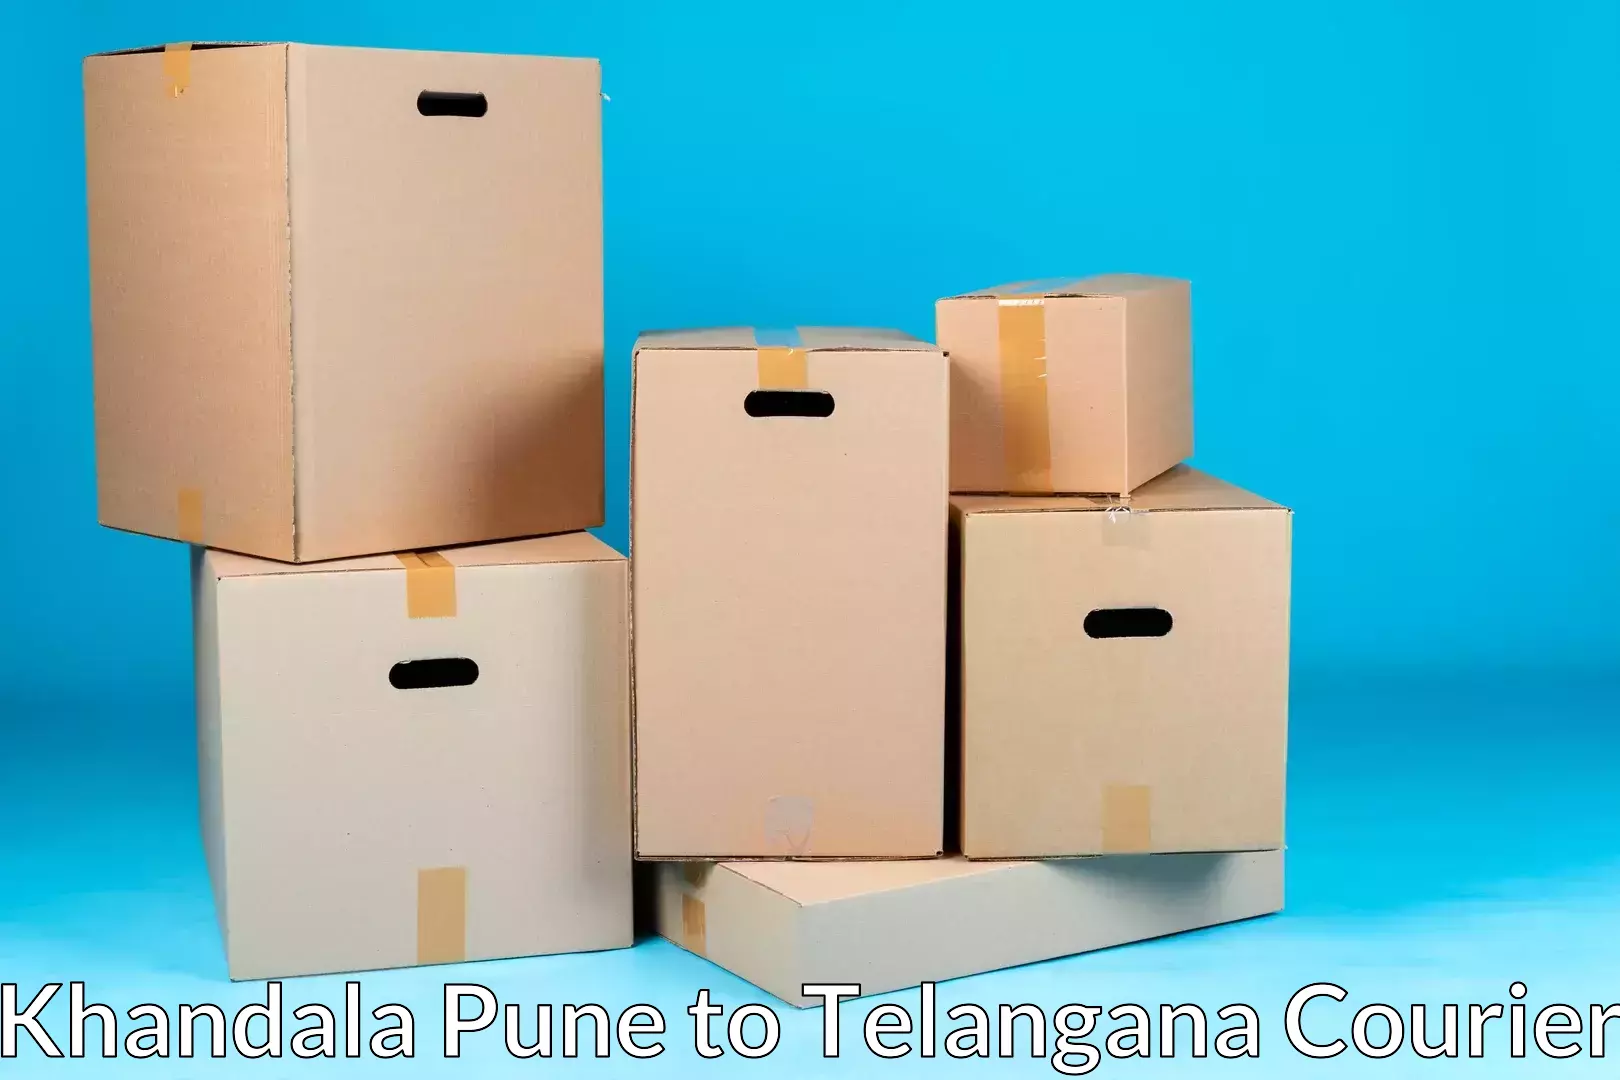 Household moving experts Khandala Pune to Bijinapalle